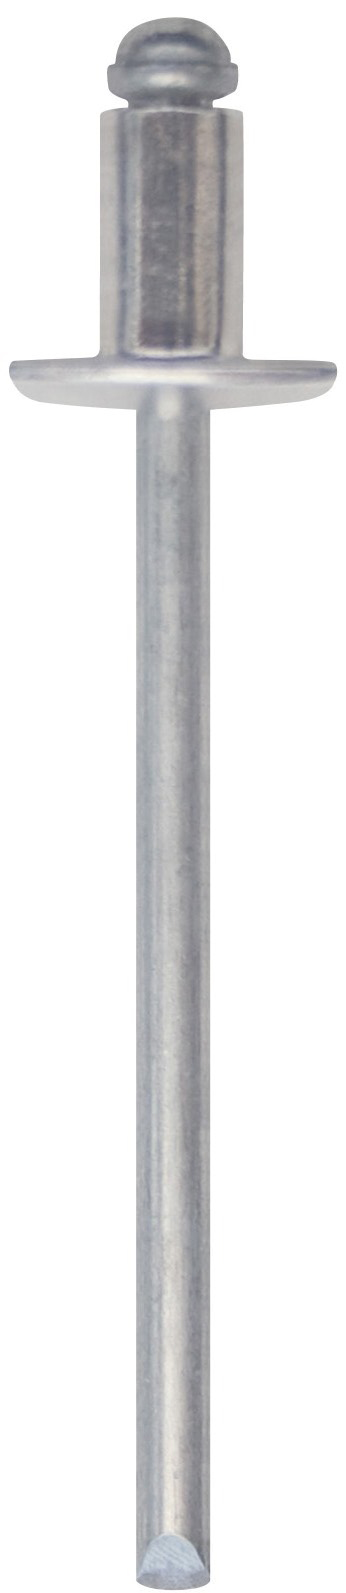 Cod. 0300003001800 - RIVEX Rivetto in alluminio